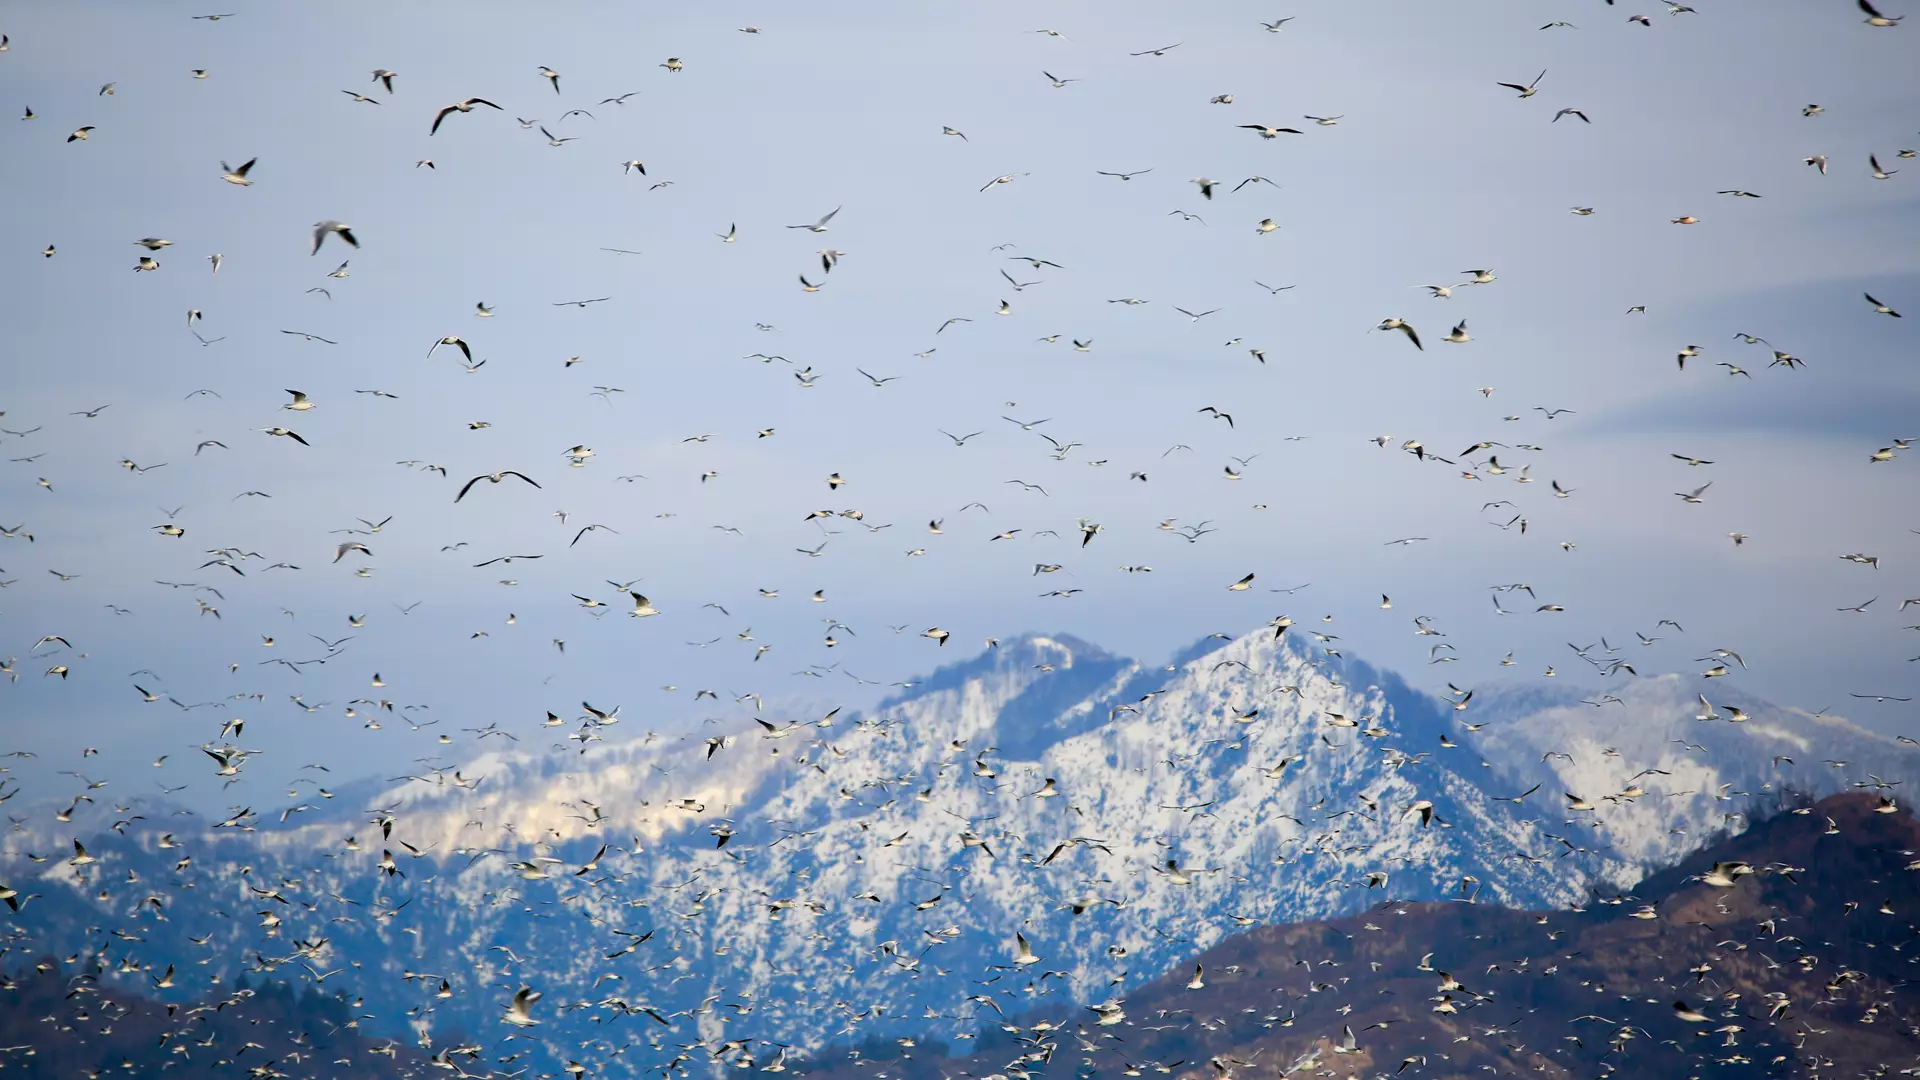 ფრინველებზე დაკვირვება: შემოდგომის მიგრაცია - აჭარის სახალვაშო